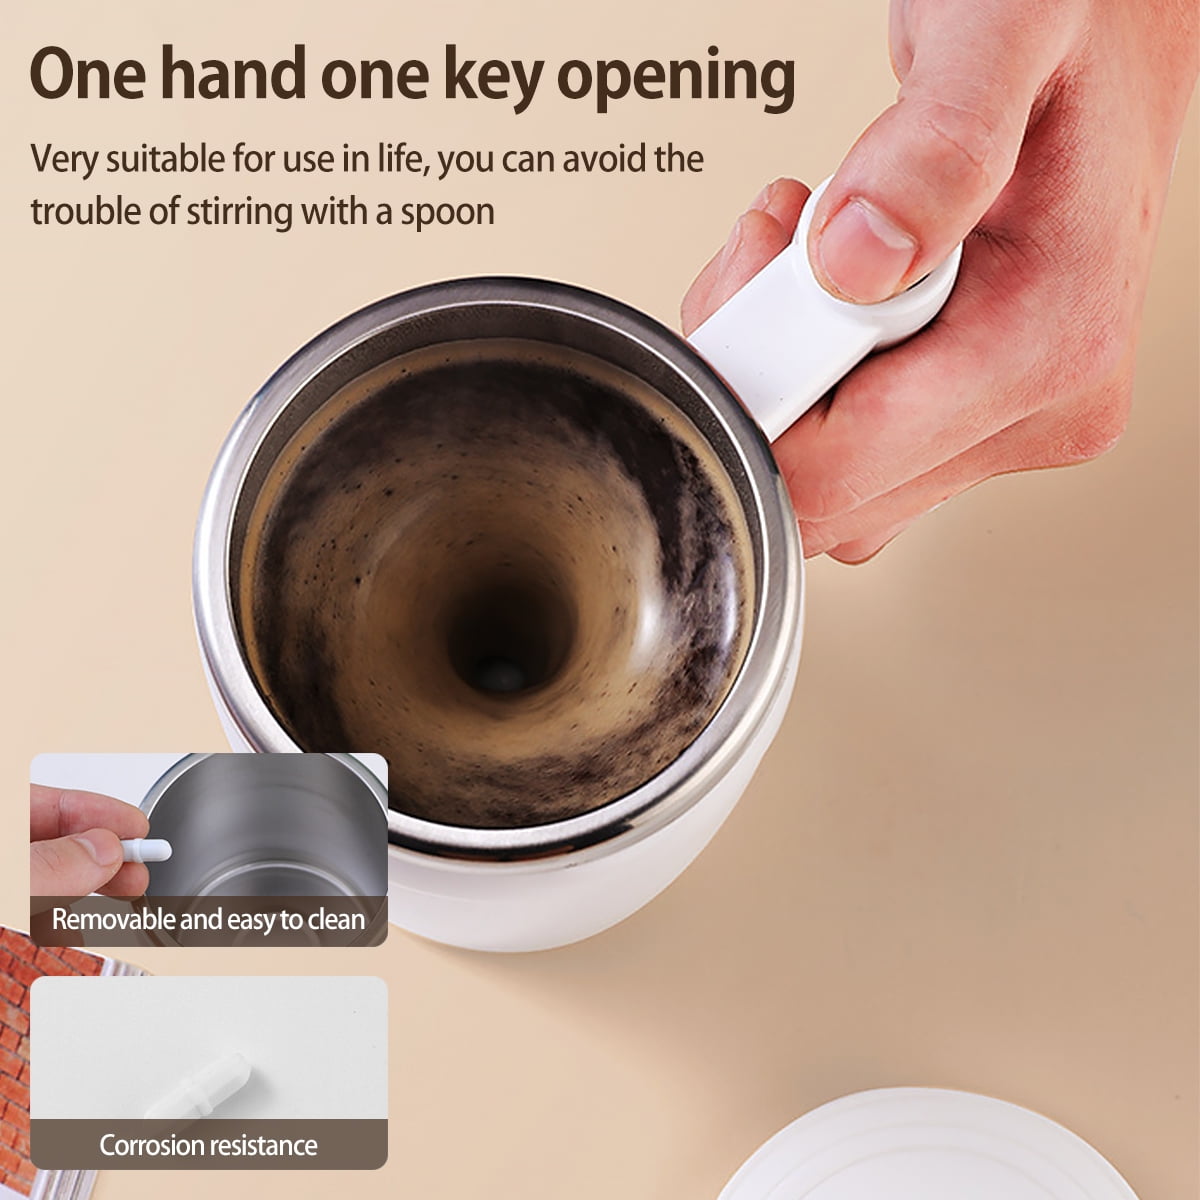 Self-Stirring Mug – Angles Stores